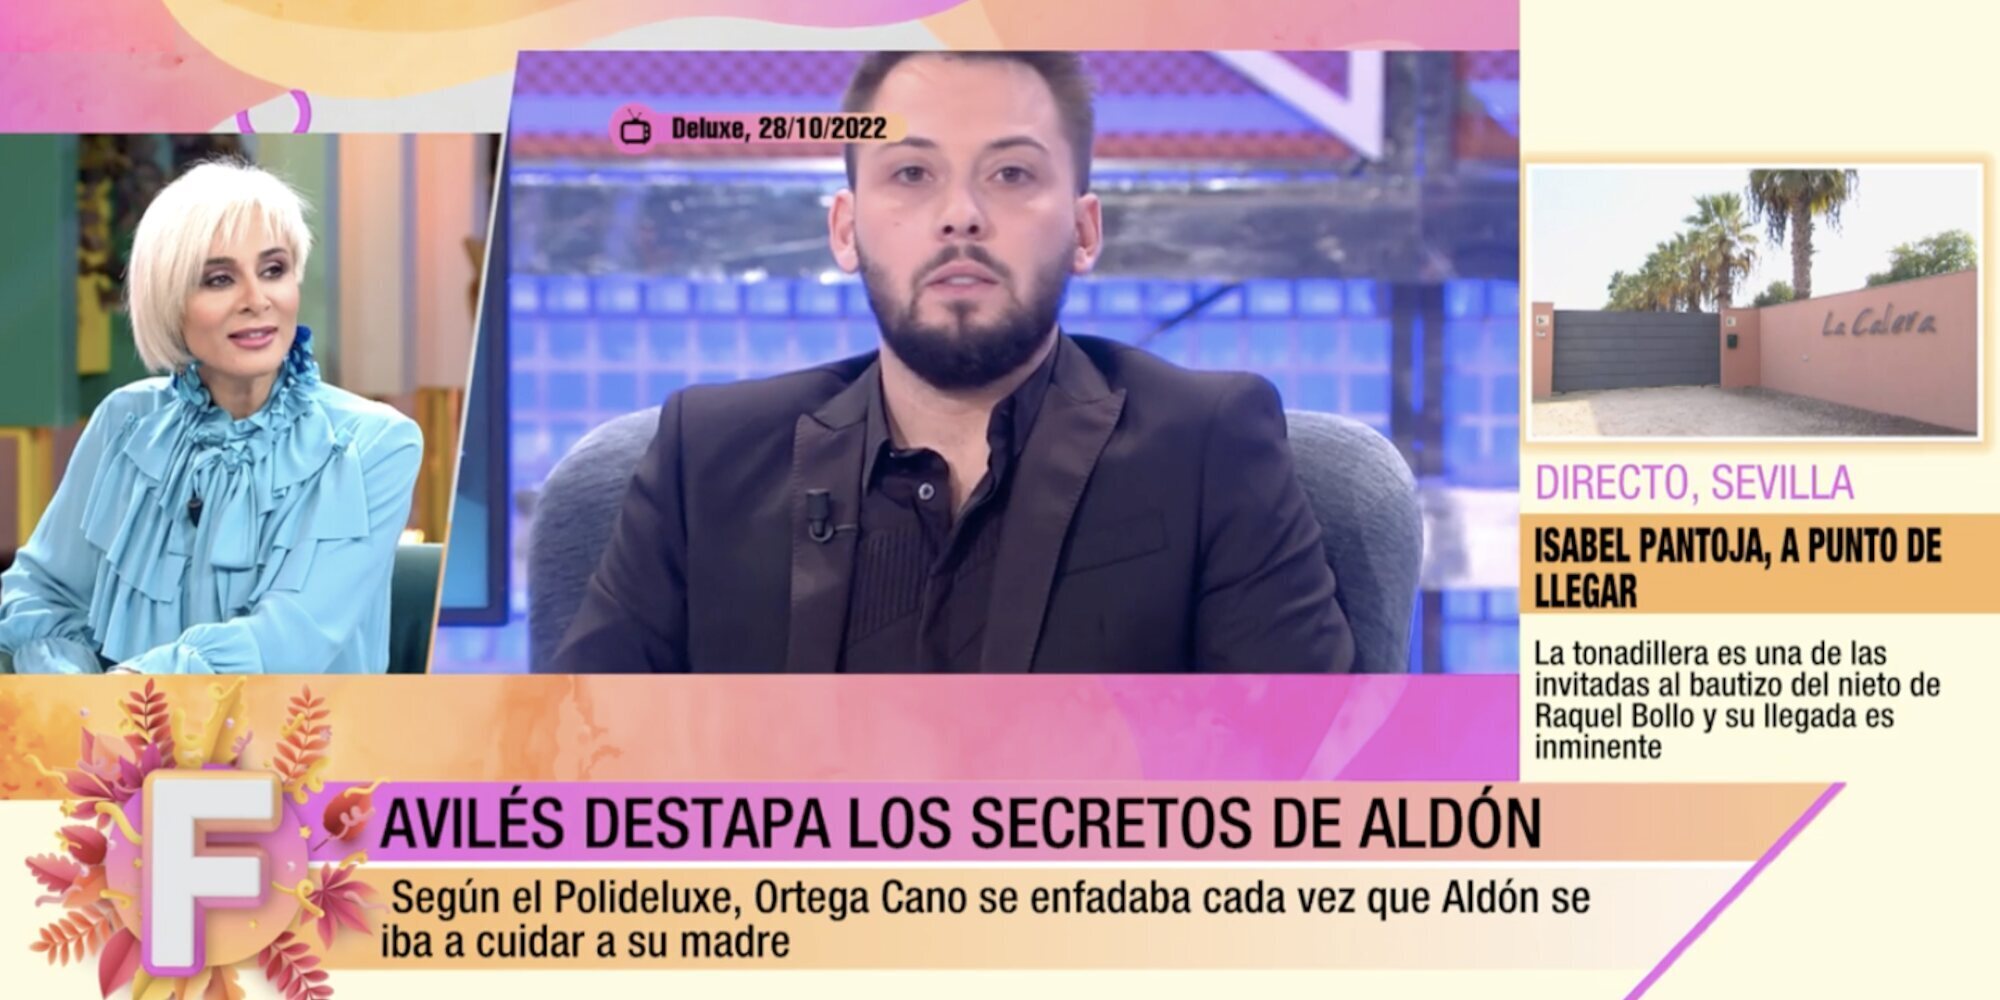 Ana María Aldón reacciona al 'polideluxe' de José Antonio Avilés: "Dice ser mi amigo y cuenta mis intimidades"